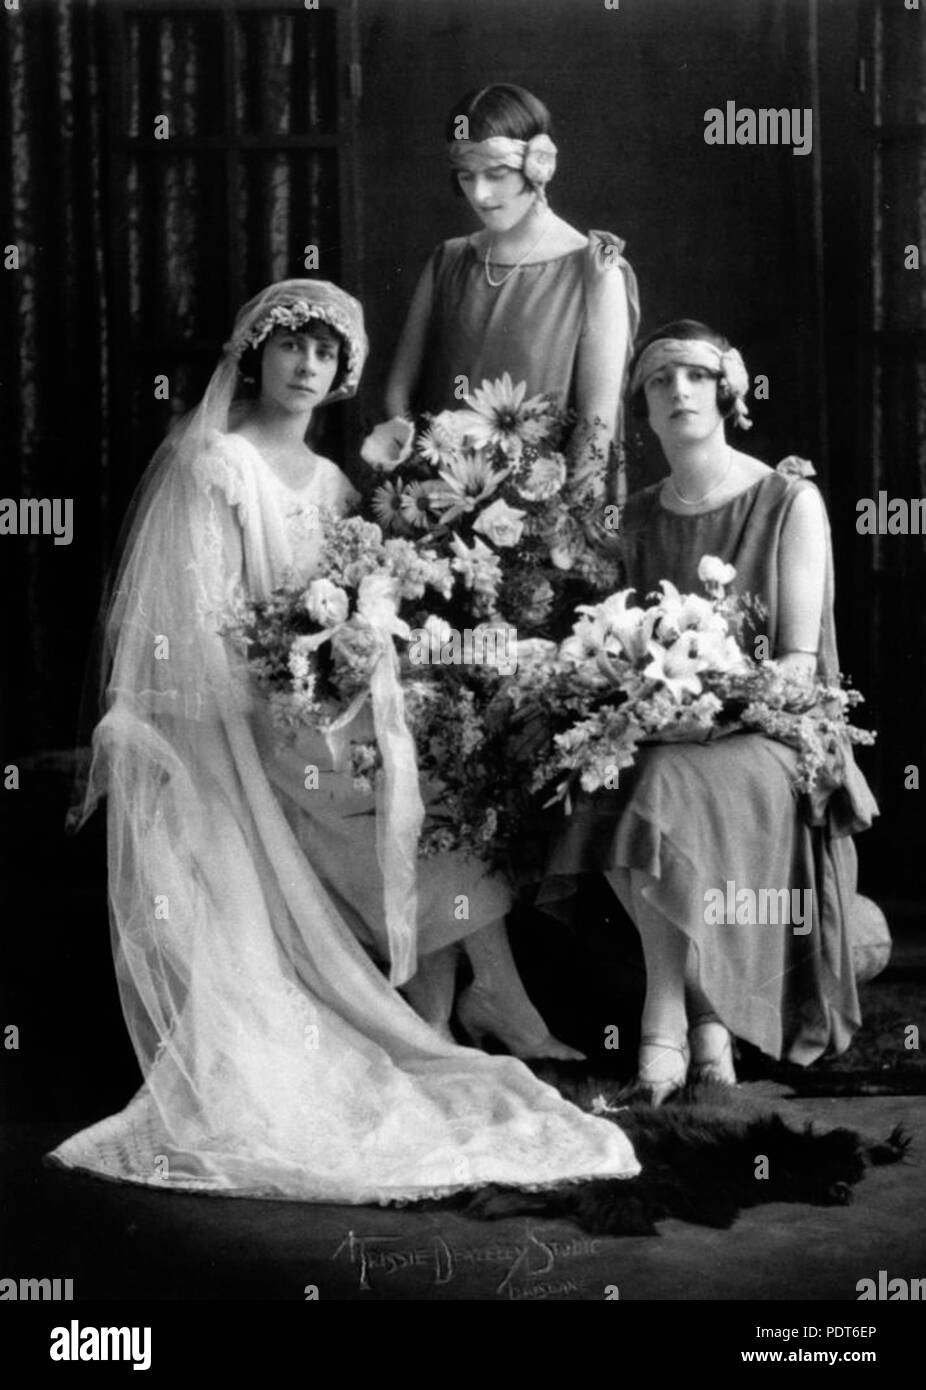 228 StateLibQld 1 146535 Agnes, Nea und Froh posieren für Hochzeitsfotos, Oktober 1925 Stockfoto